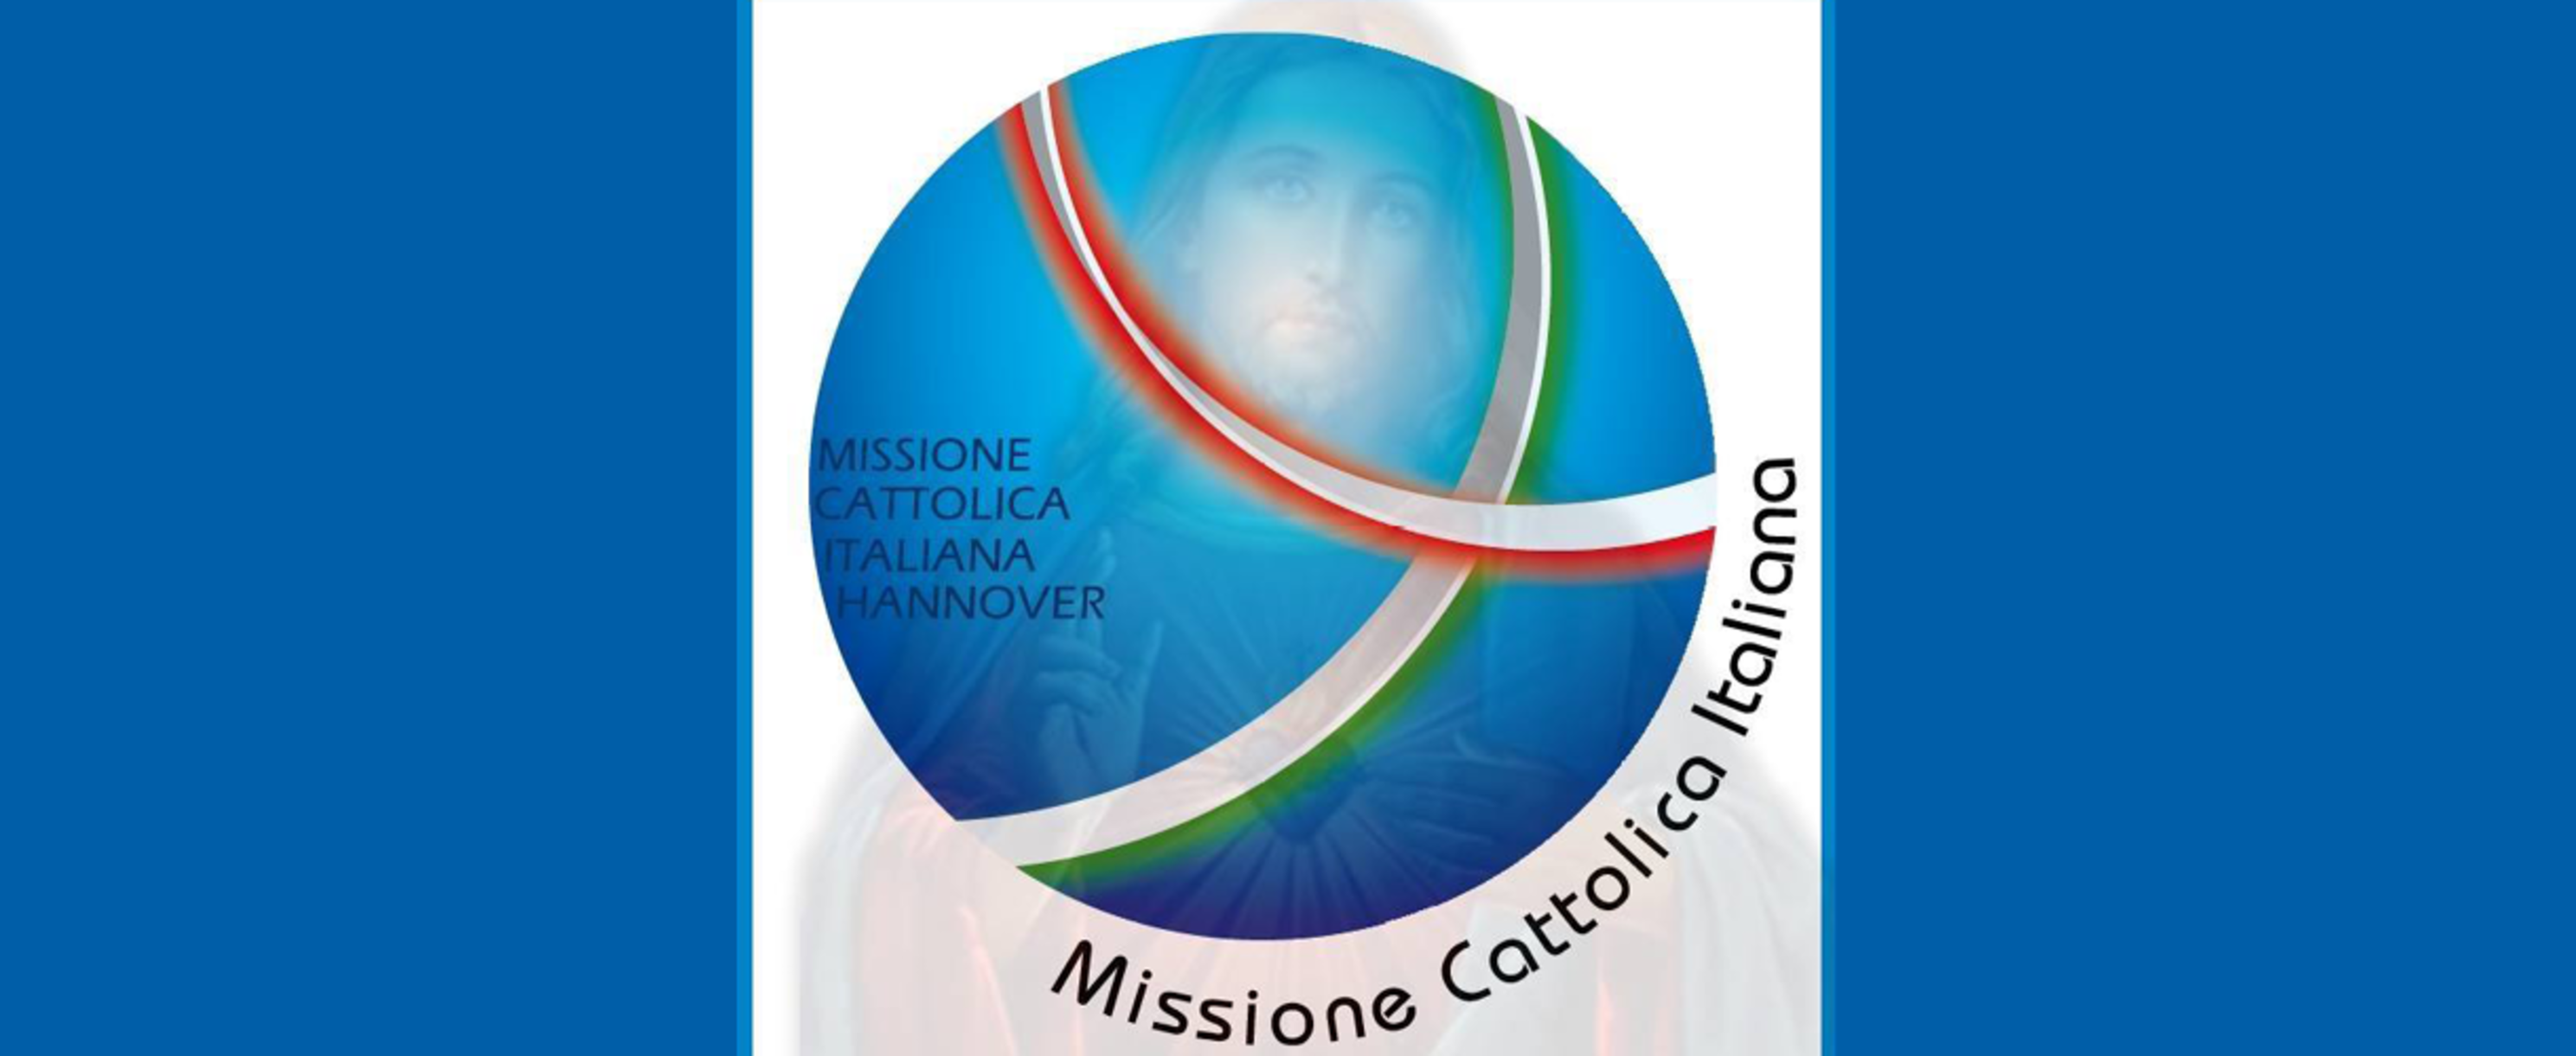 Italienische katholische Mission in Hannover